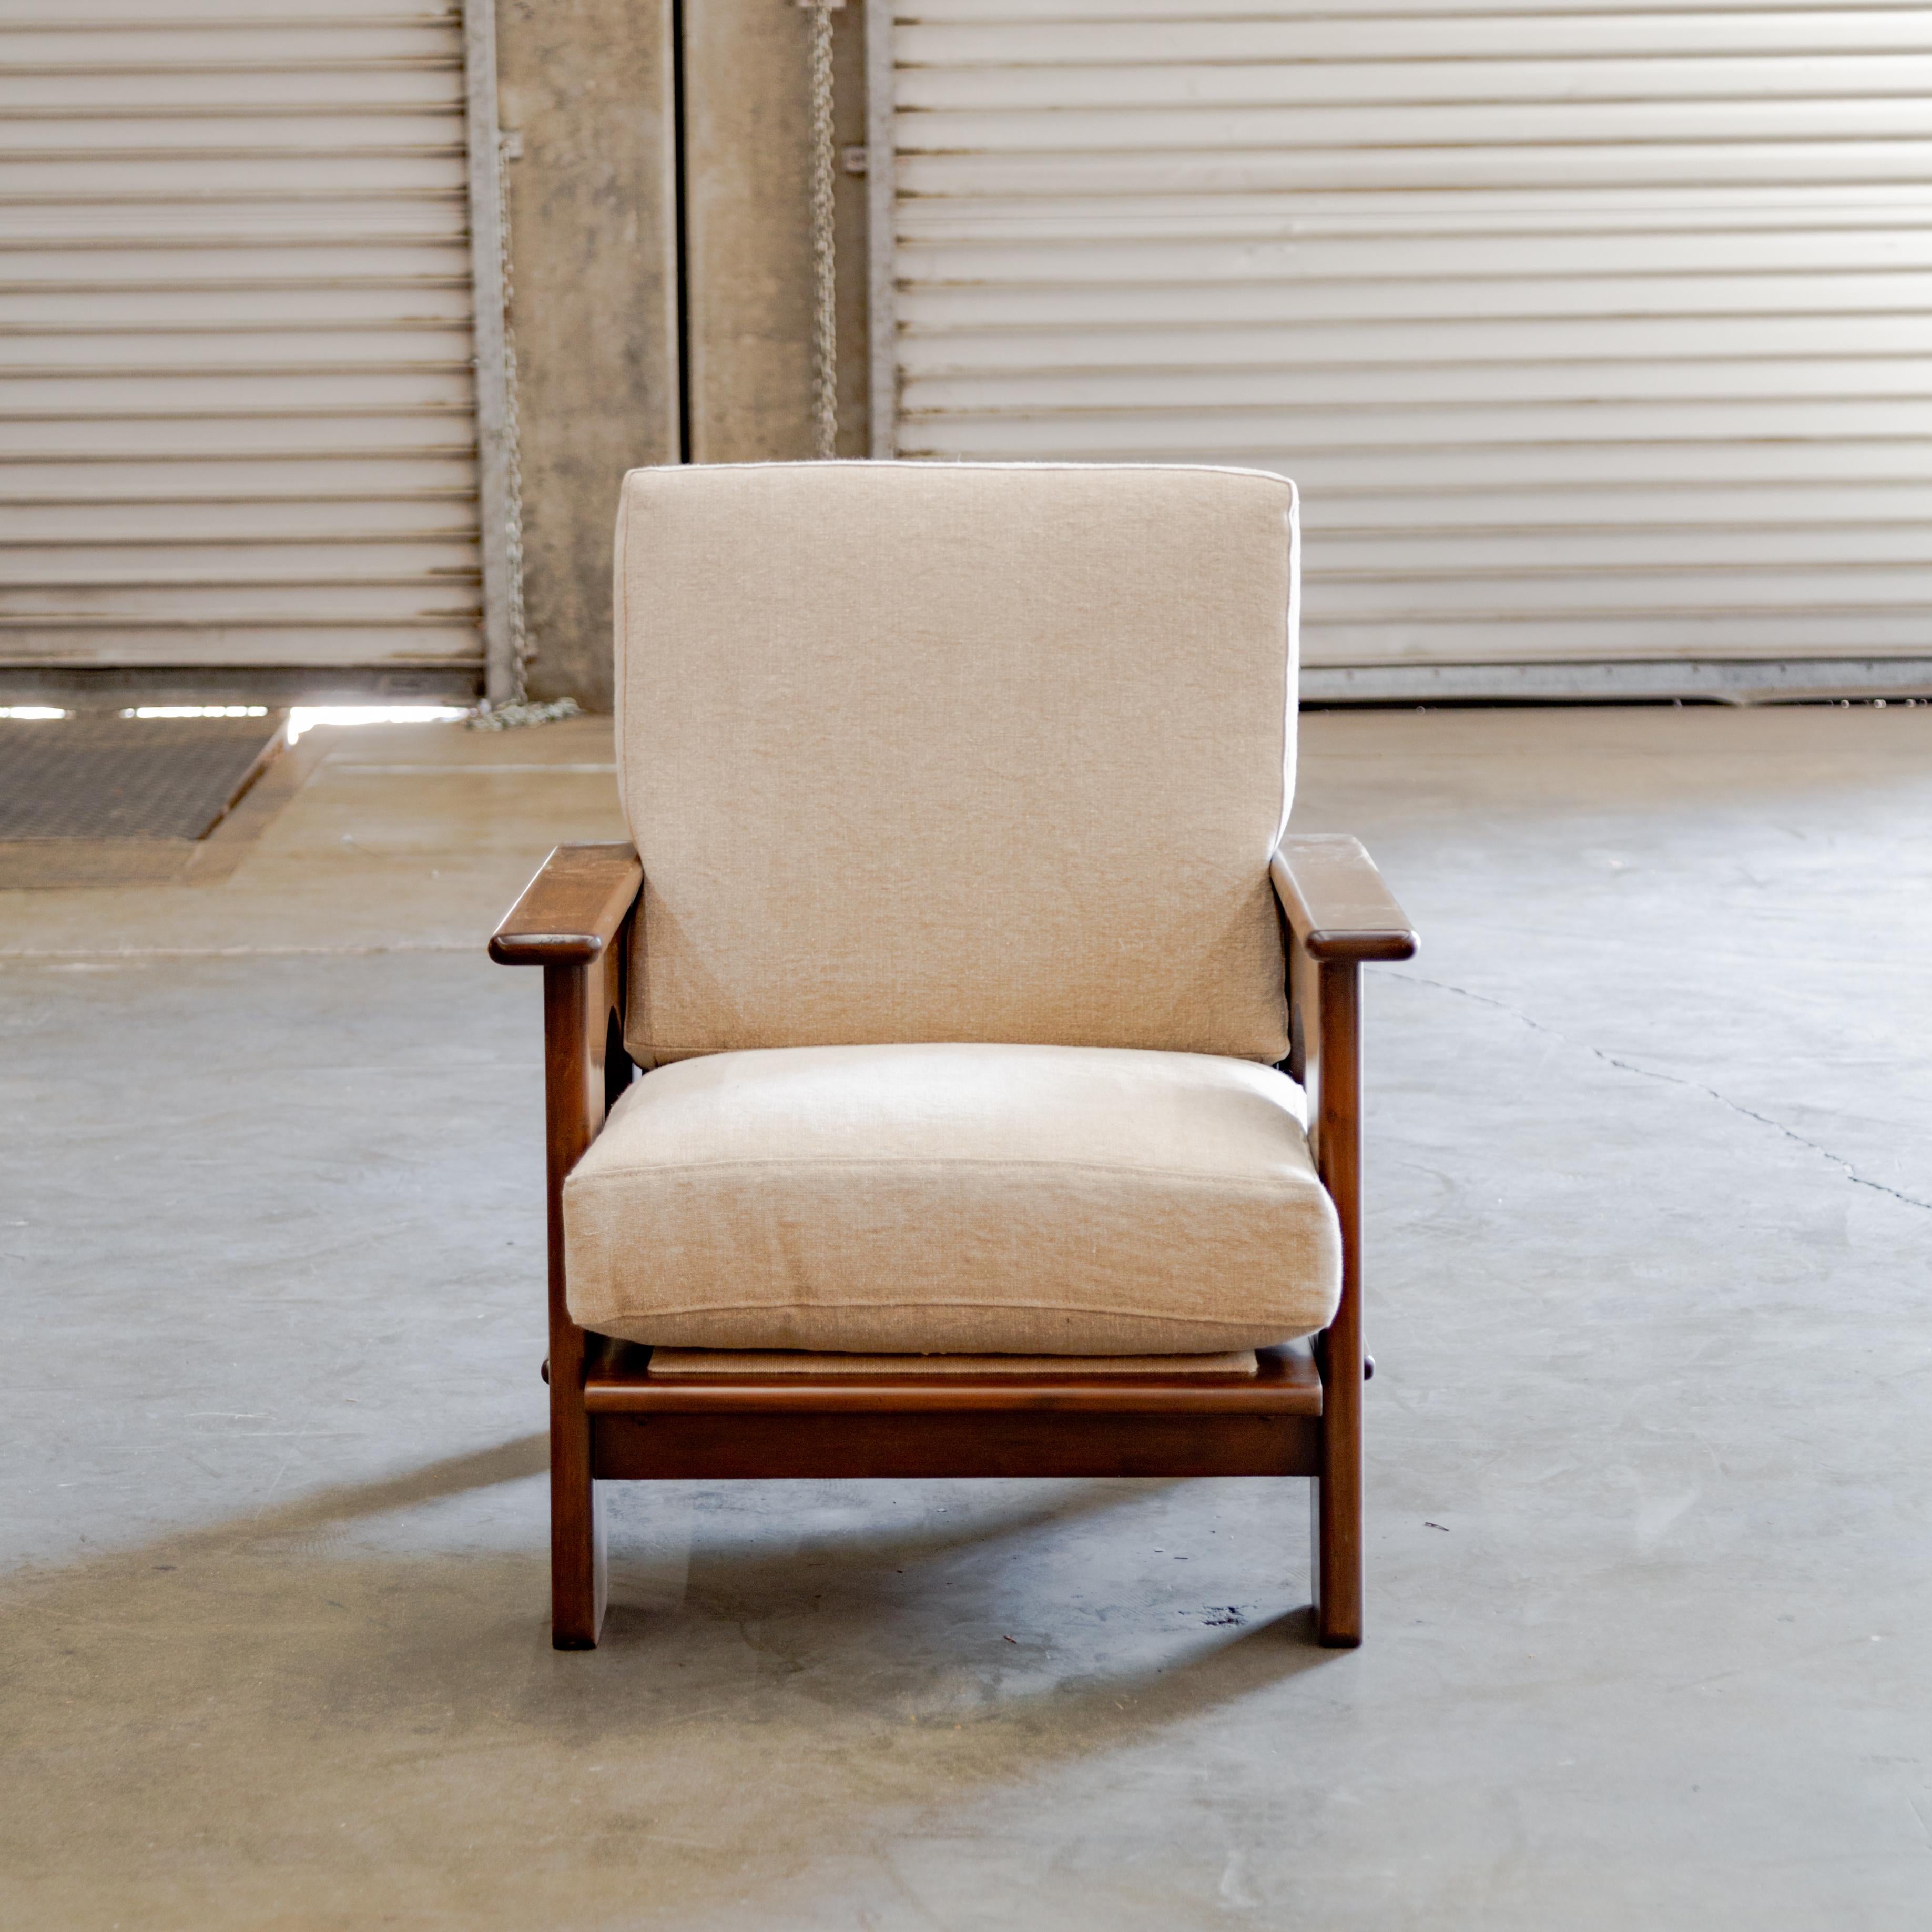 Dutch modernist oakwood club chair modeled after design by Bas Van Pelt, Holland, circa 1940's.